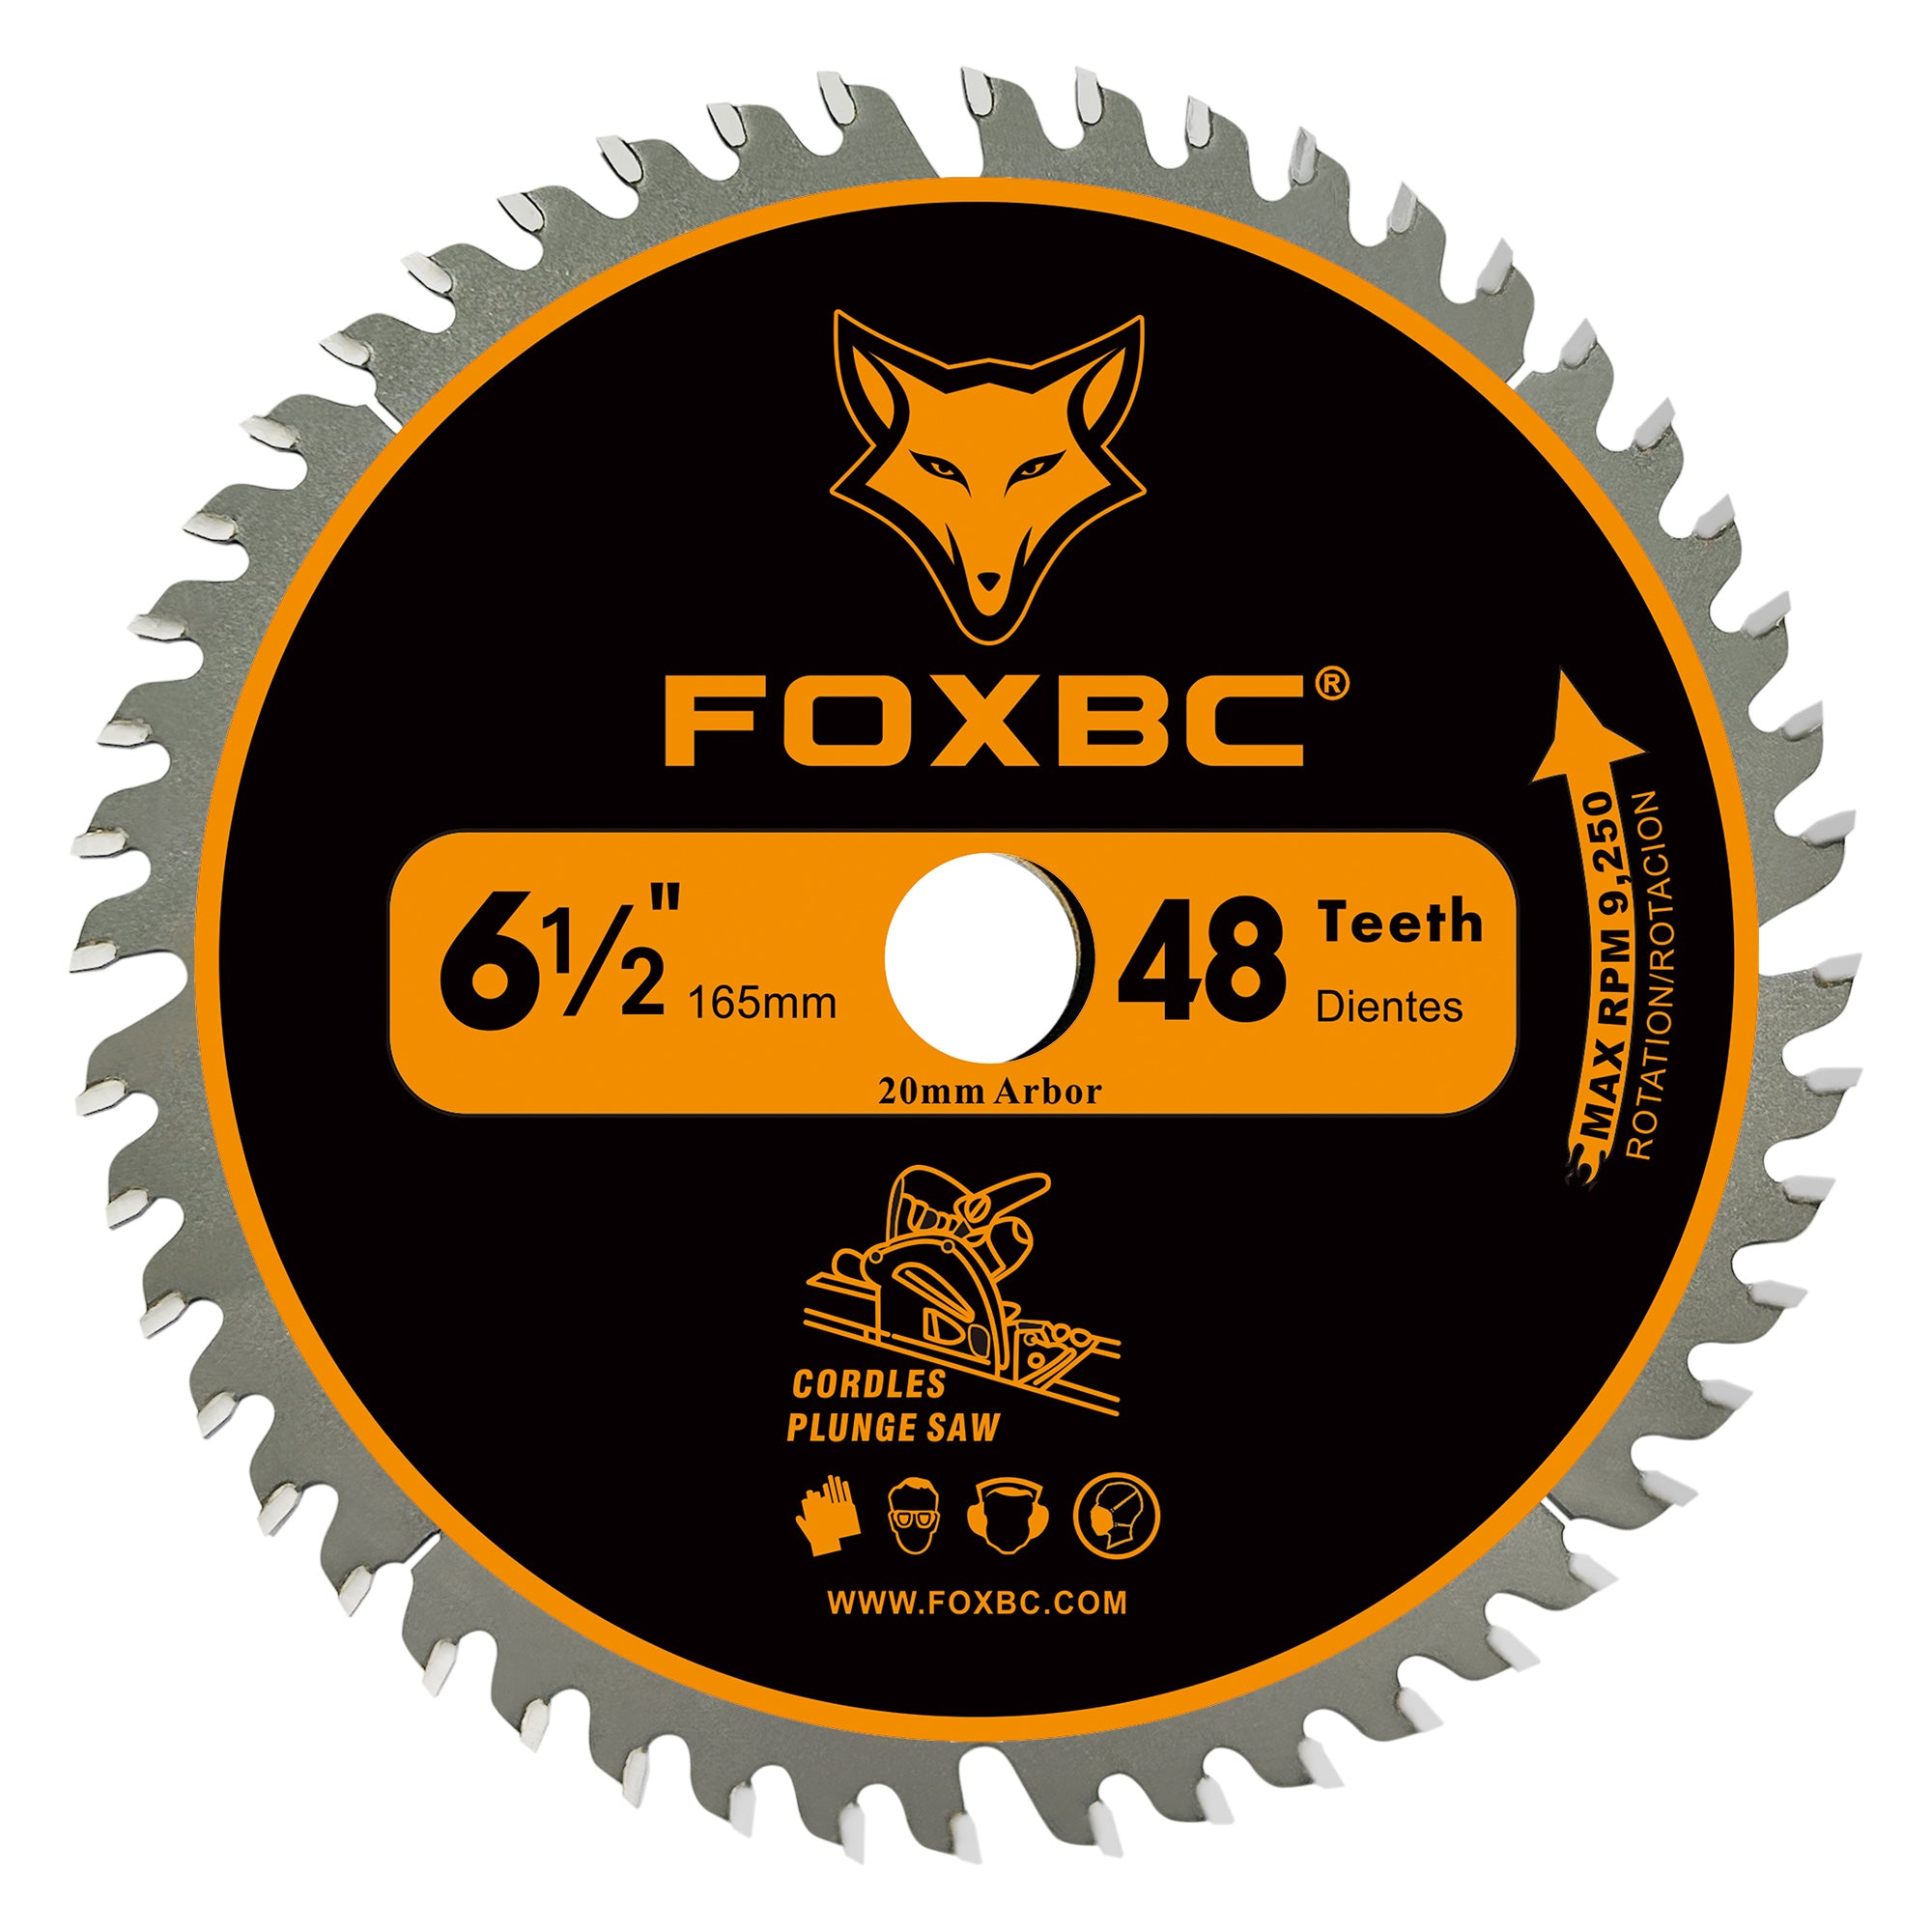 FOXBC 6-1/2" 165mm X 20mm 48T Track Saw Blade for DeWalt DWS520, Makita Plunge Circular Saw